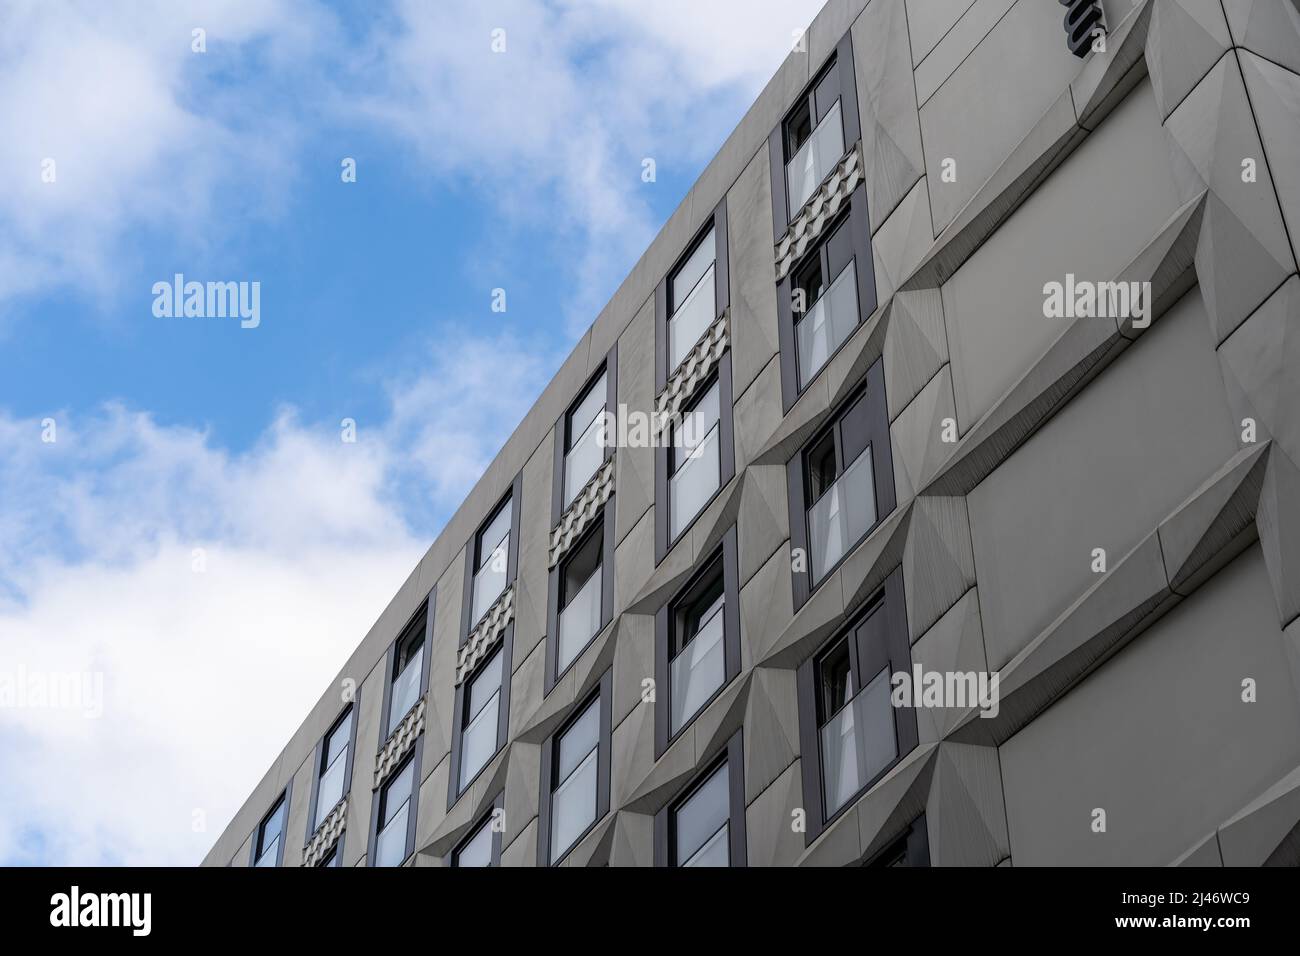 Modernes Fassadendesign vor einem blauen Himmel mit weißen Wolken. Graue Elemente mit Relief und Glasfenstern. Futuristische Architektur im Außenbereich. Stockfoto